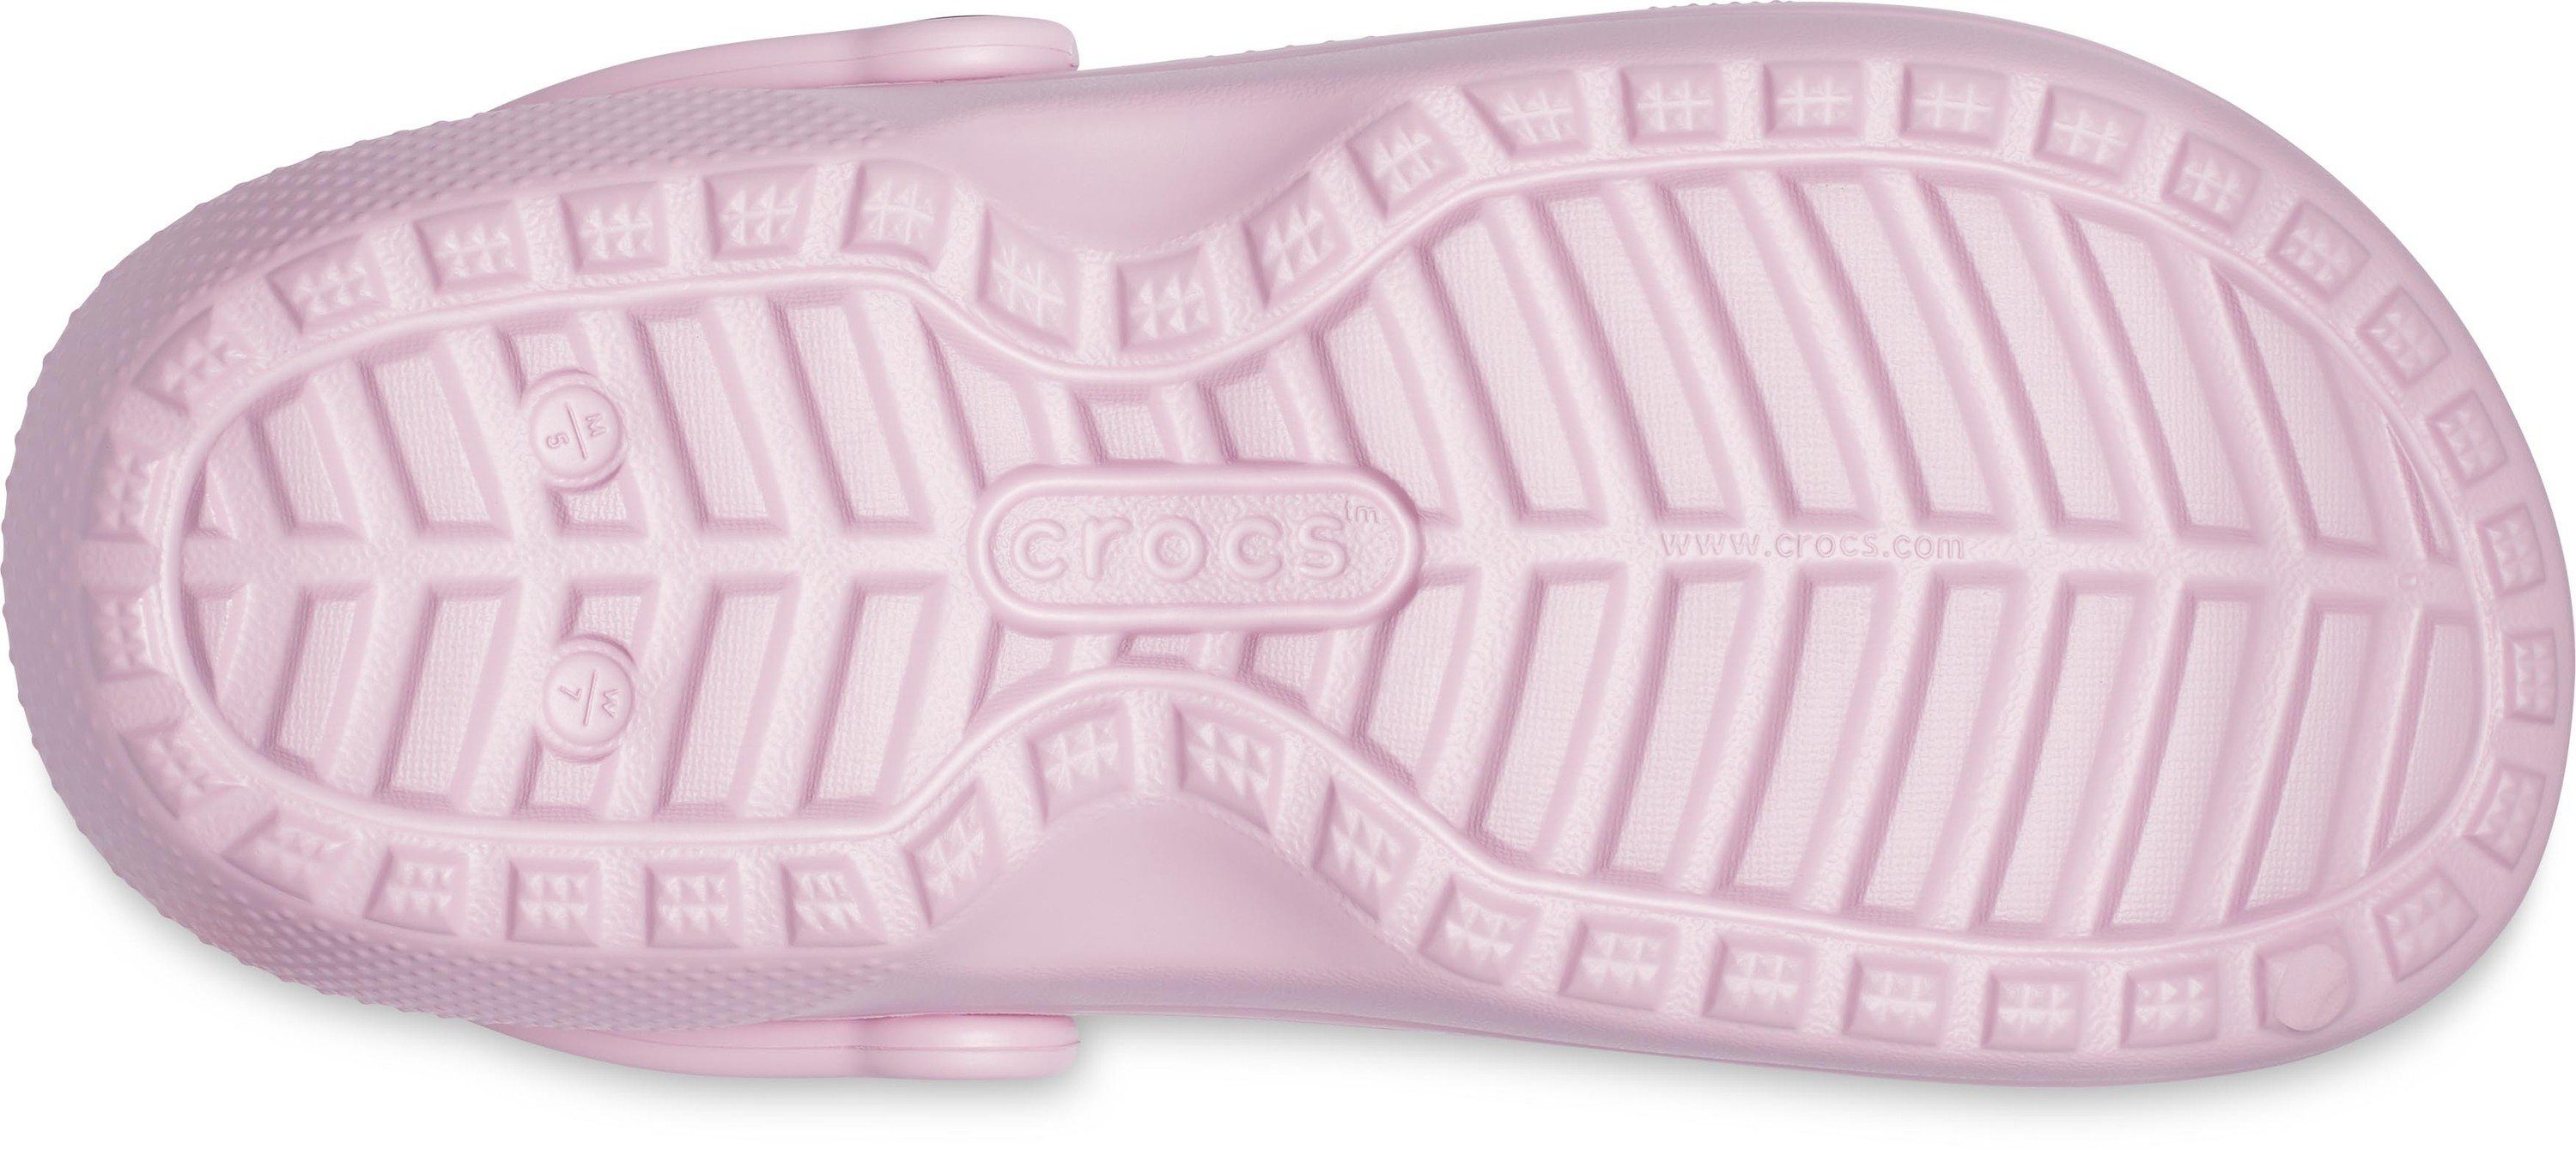 Crocs Chelseaboots